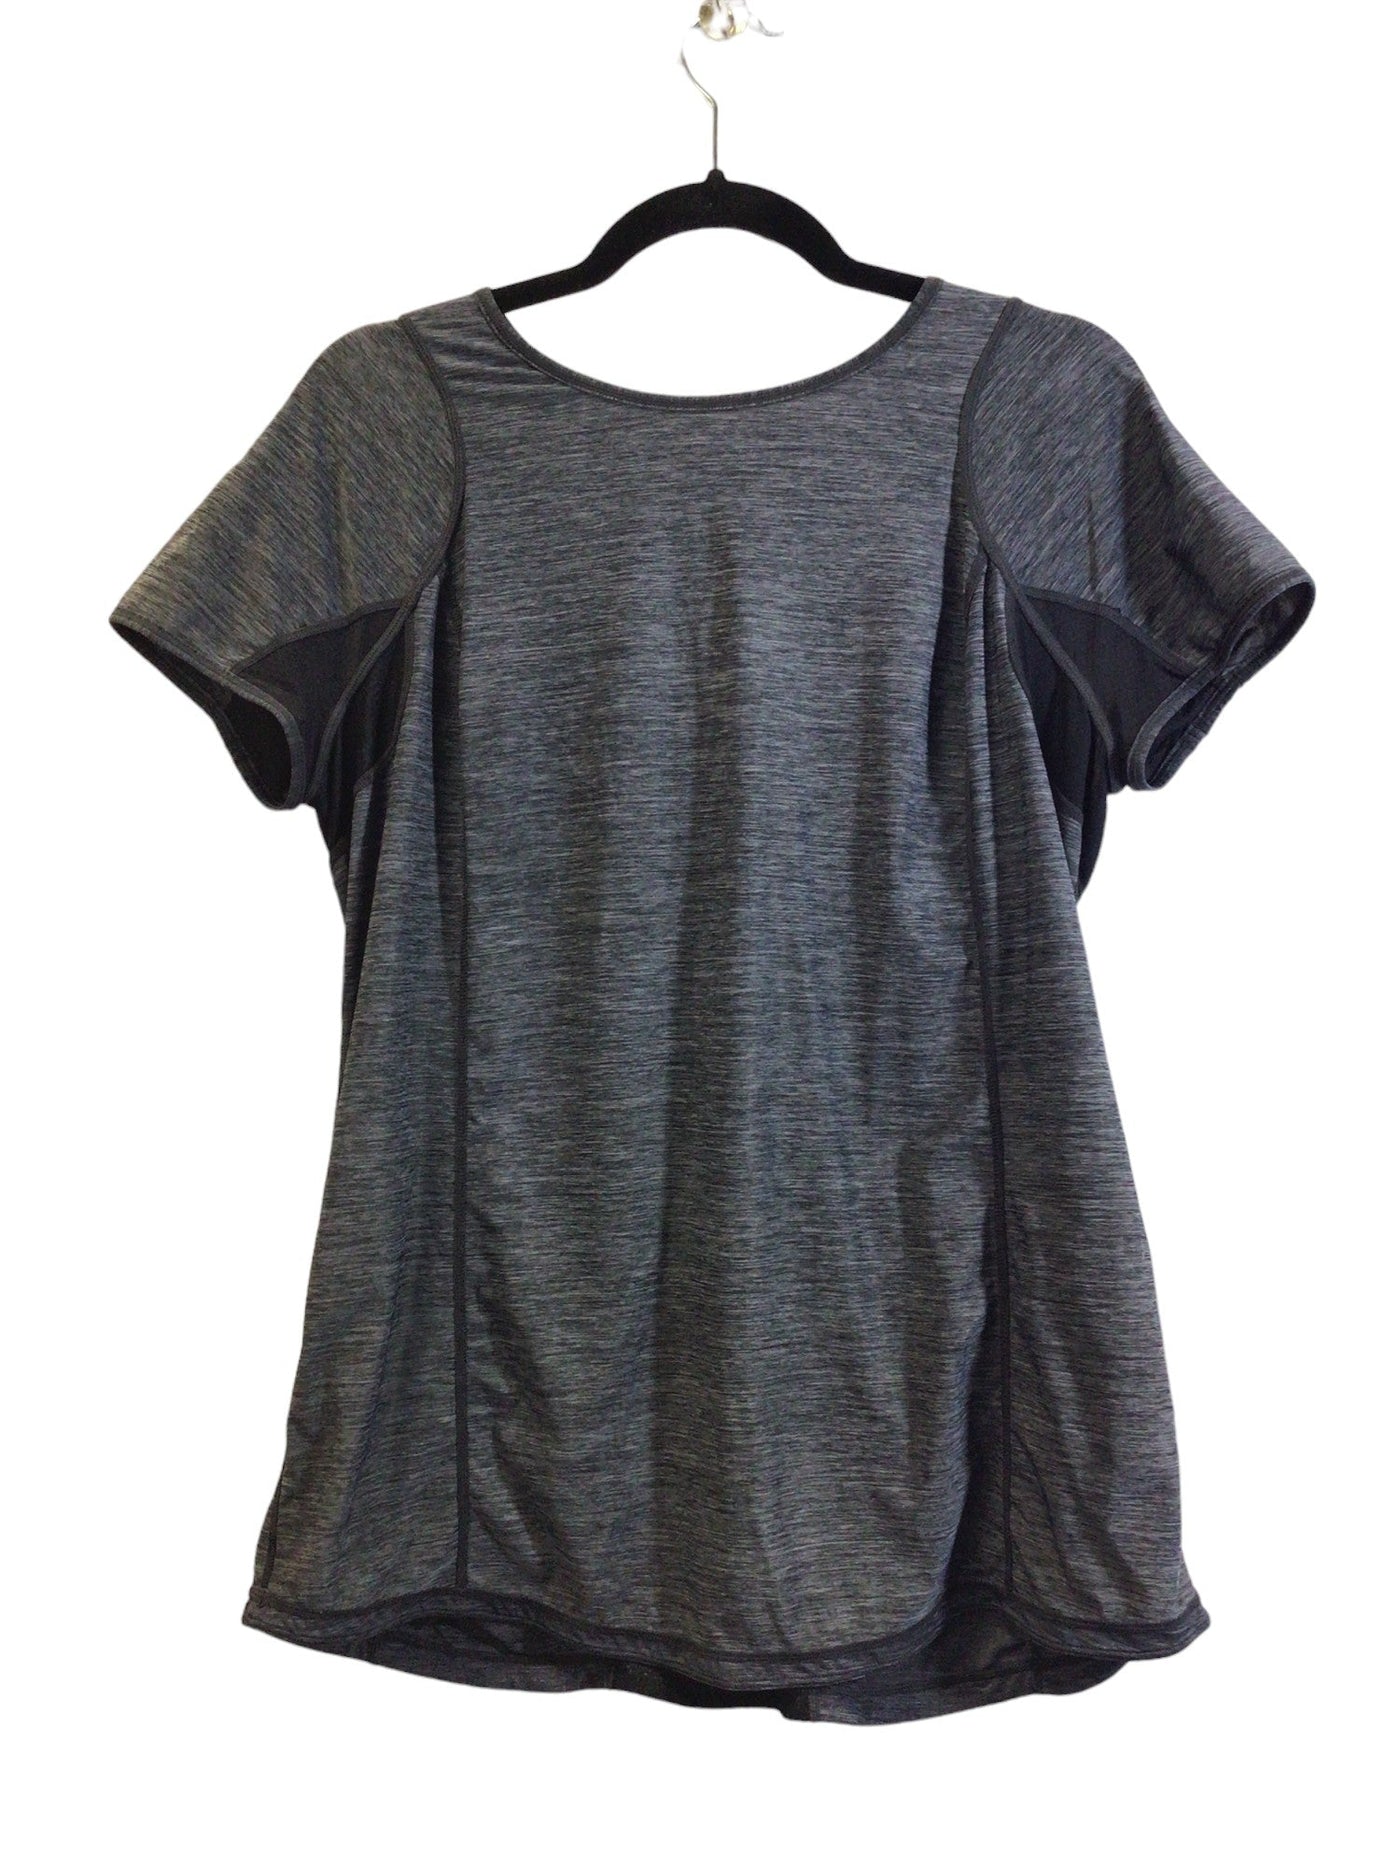 LULULEMON Women Activewear Tops Regular fit in Gray - Size M | 18.5 $ KOOP